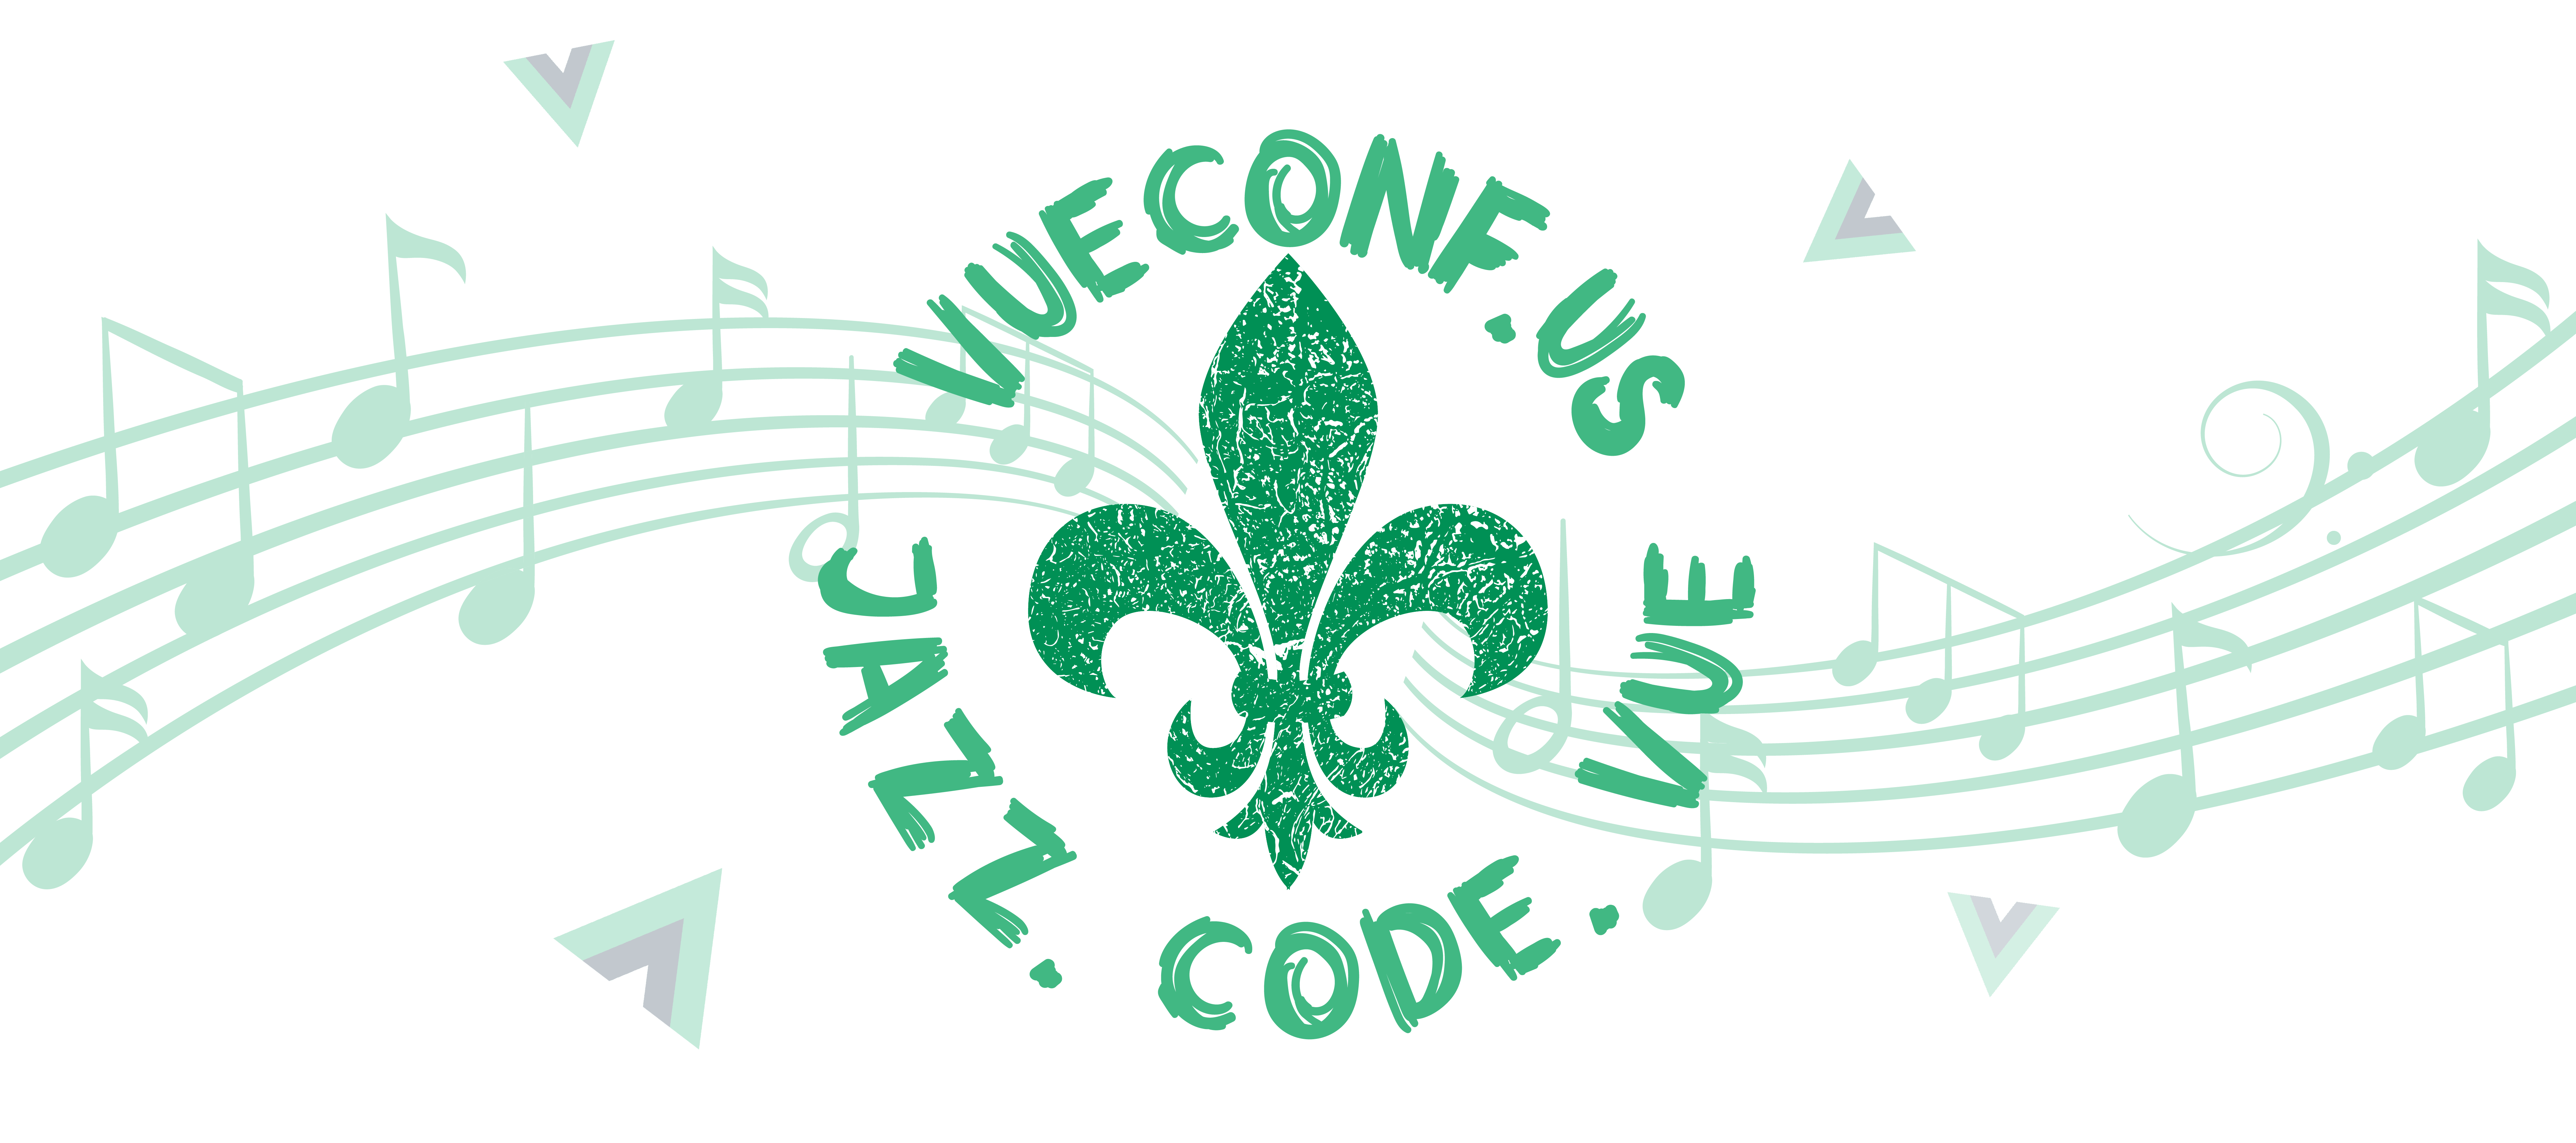 Green fleur de lys symbol with text that reads vueconf.us - Jazz. Code. Vue.